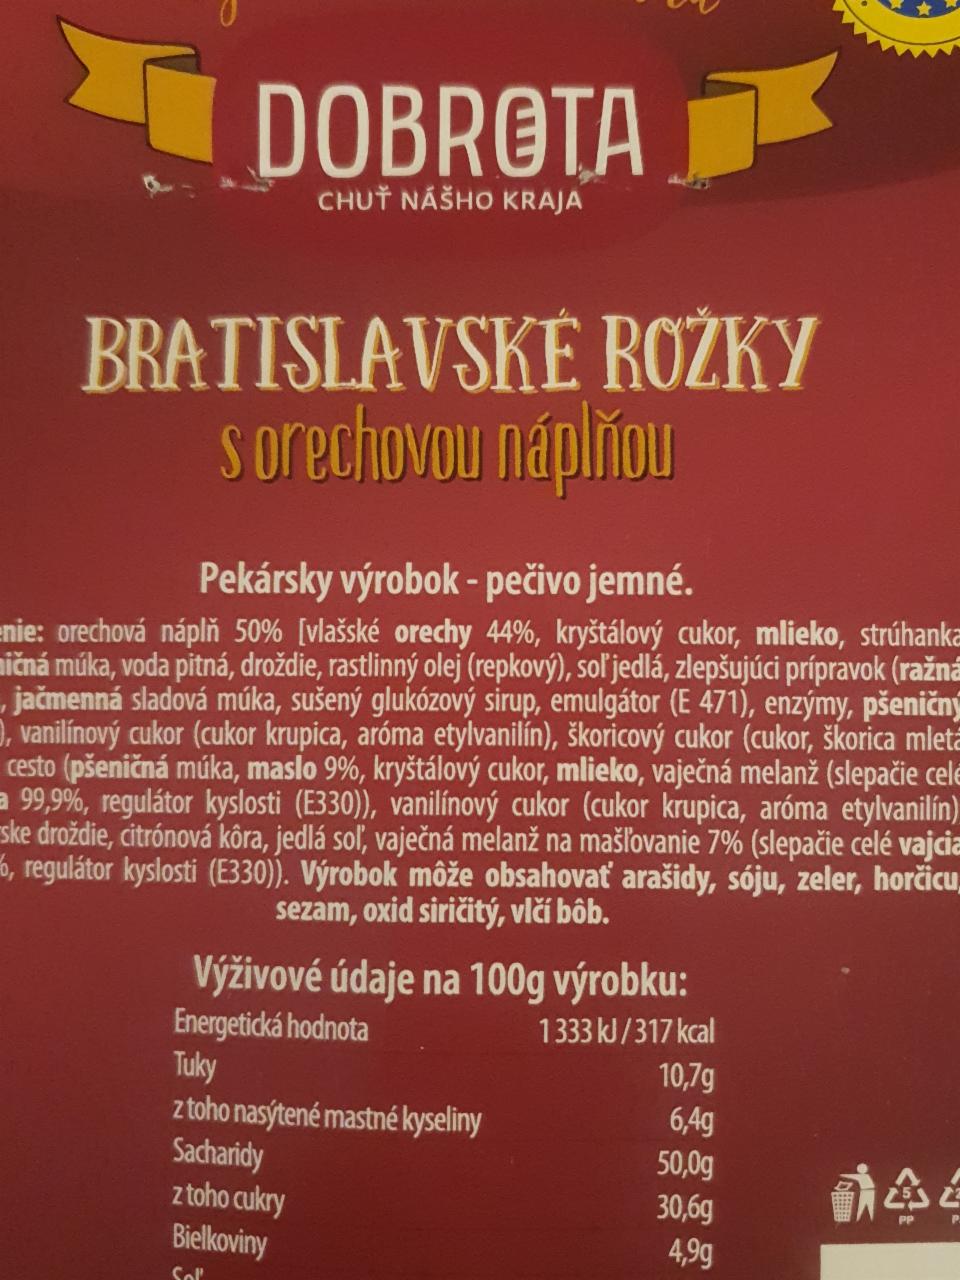 Fotografie - Bratislavské rožky s orechovou náplňou Dobrota